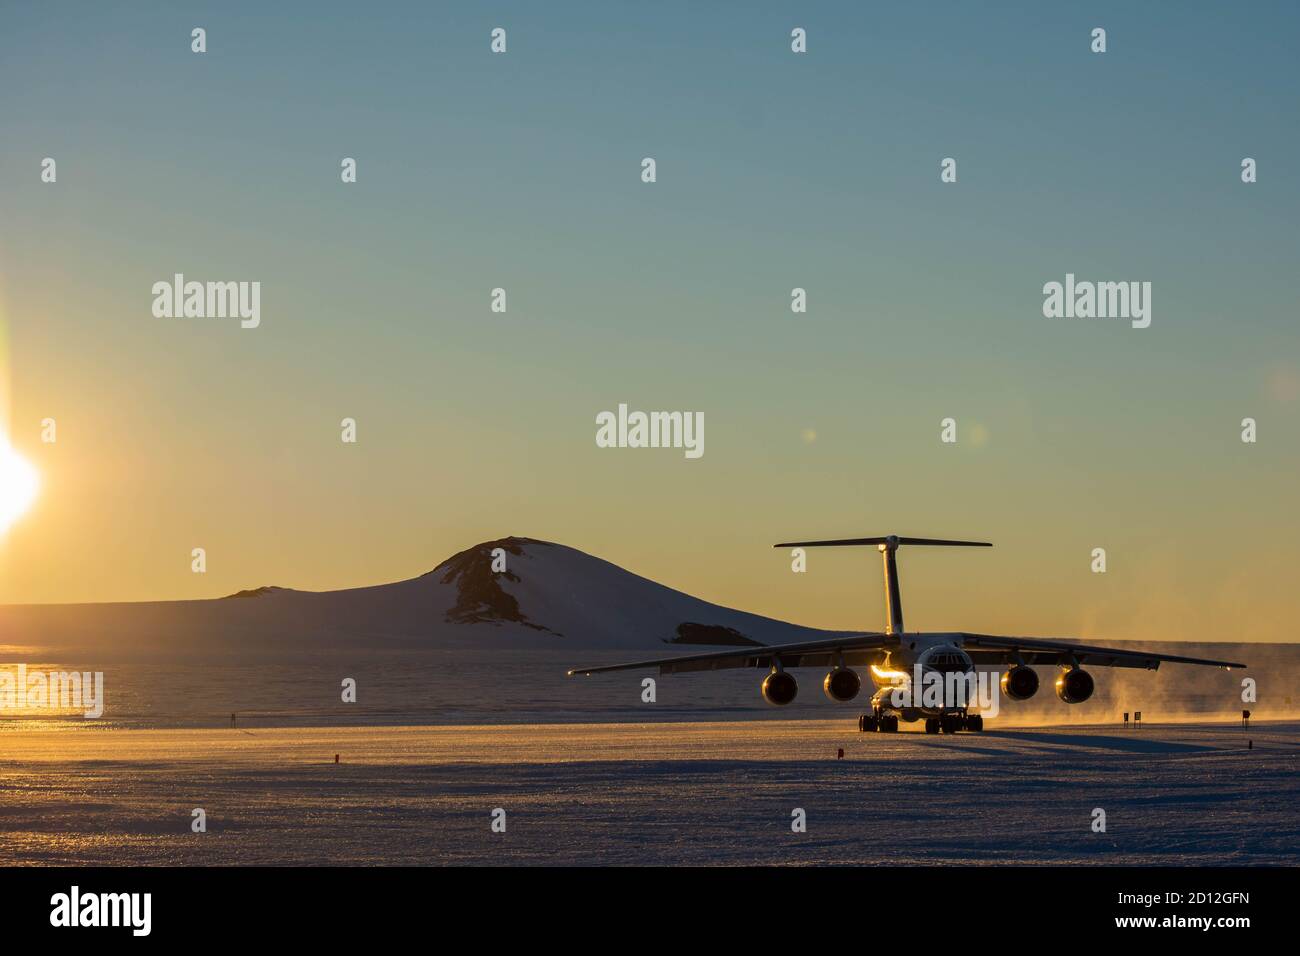 Antarctique, station Novolazarevskaya 23 avril 2020 : un avion de transport et de cargaison Volga-Dnepr il 76 est en cours de chargement, sur un champ de glace en Antarctique, dans la ta Banque D'Images